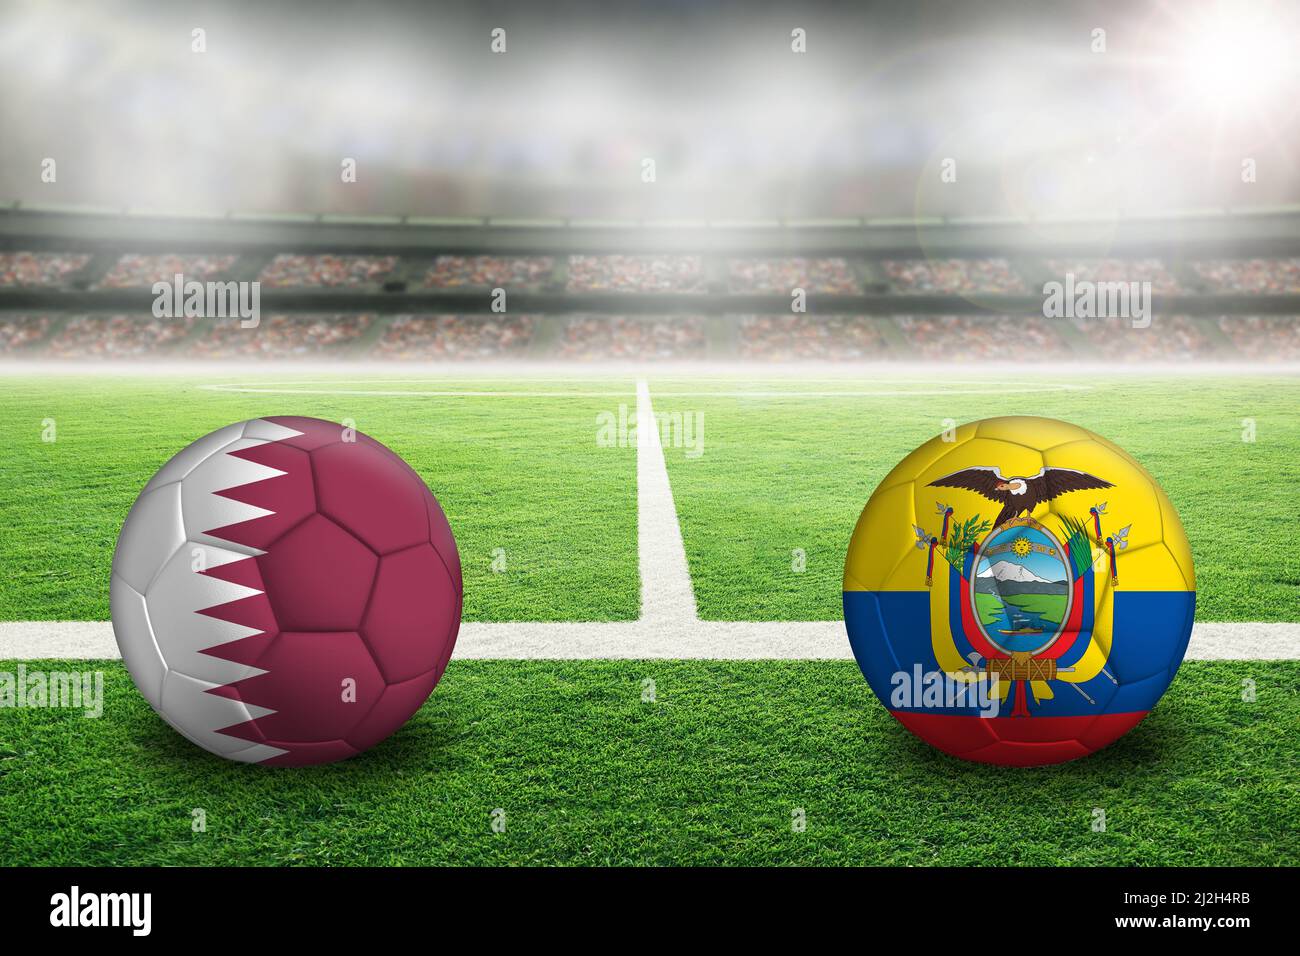 Katar gegen Ecuador Fußball in hell erleuchtetem Outdoor-Stadion mit gemalter Landesflagge. Konzentrieren Sie sich auf den Vordergrund und den Fußball mit geringer Tiefe des Fie Stockfoto